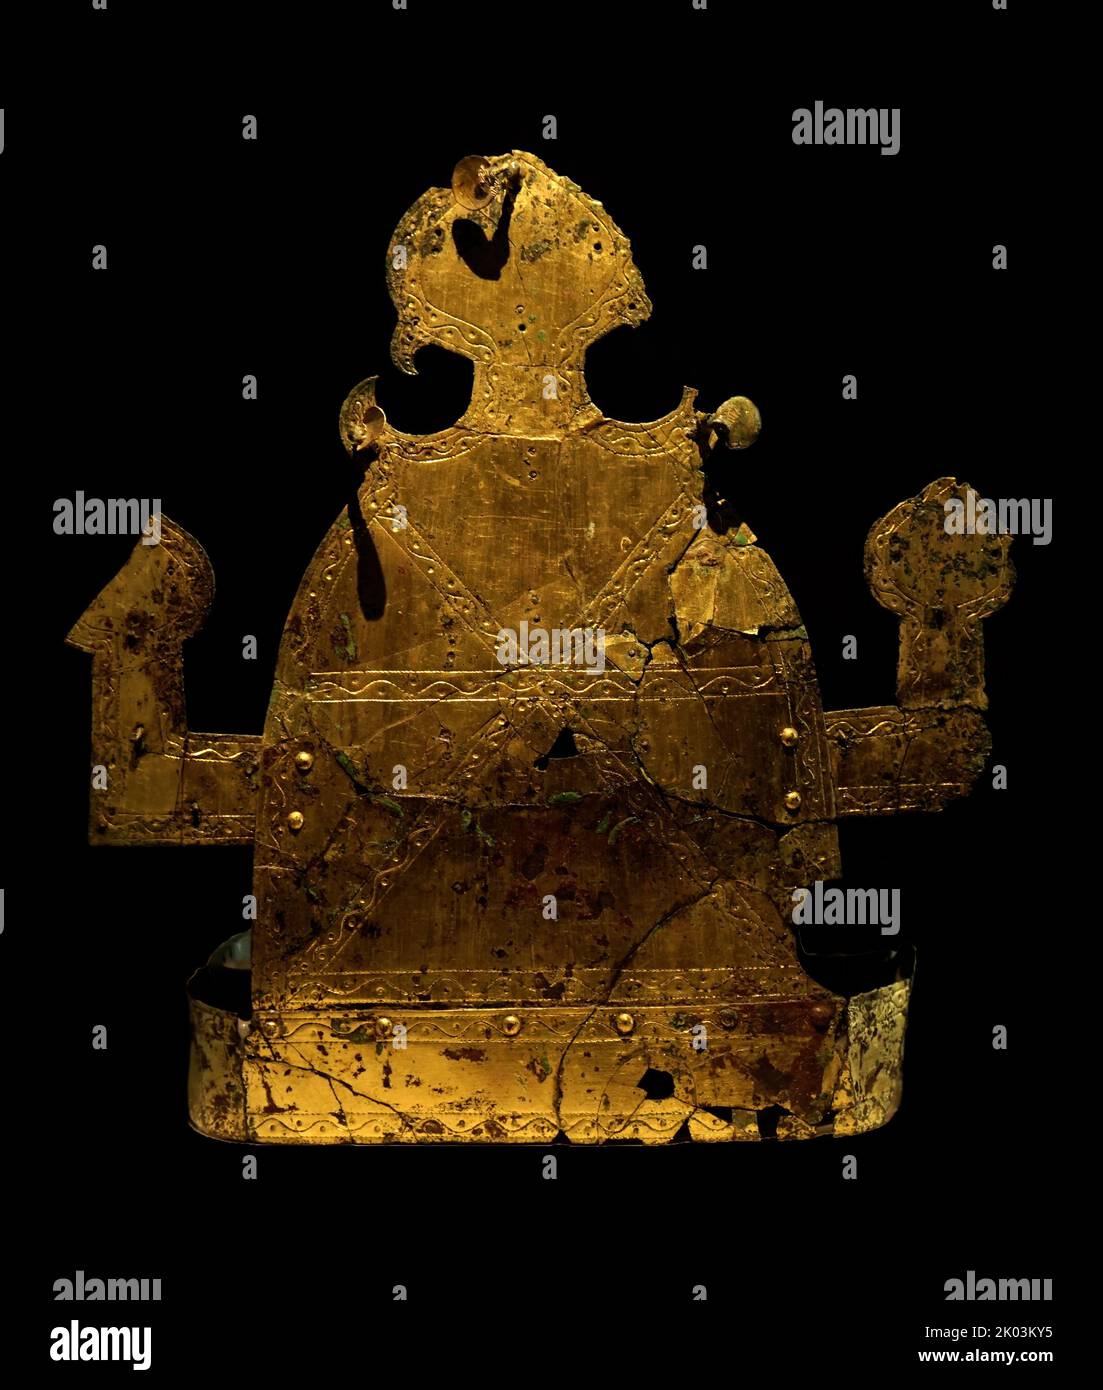 Couronne de bronze doré, Jisan-Dong, Goryeong Gyeongsangbu-do, Corée du Sud. Bijoux ornementaux découverts sur les tombes anciennes de Jisan-dong, Goryeong, Corée du Sud. Période Gaya. La période traditionnelle utilisée par les historiens pour la chronologie de Gaya est AD 42-532. Selon les preuves archéologiques des troisième et quatrième siècles, certaines des villes-États de Byeonhan ont évolué en confédération de Gaya, qui a été plus tard annexée par Silla, l'un des trois royaumes de Corée. 5th siècle Banque D'Images